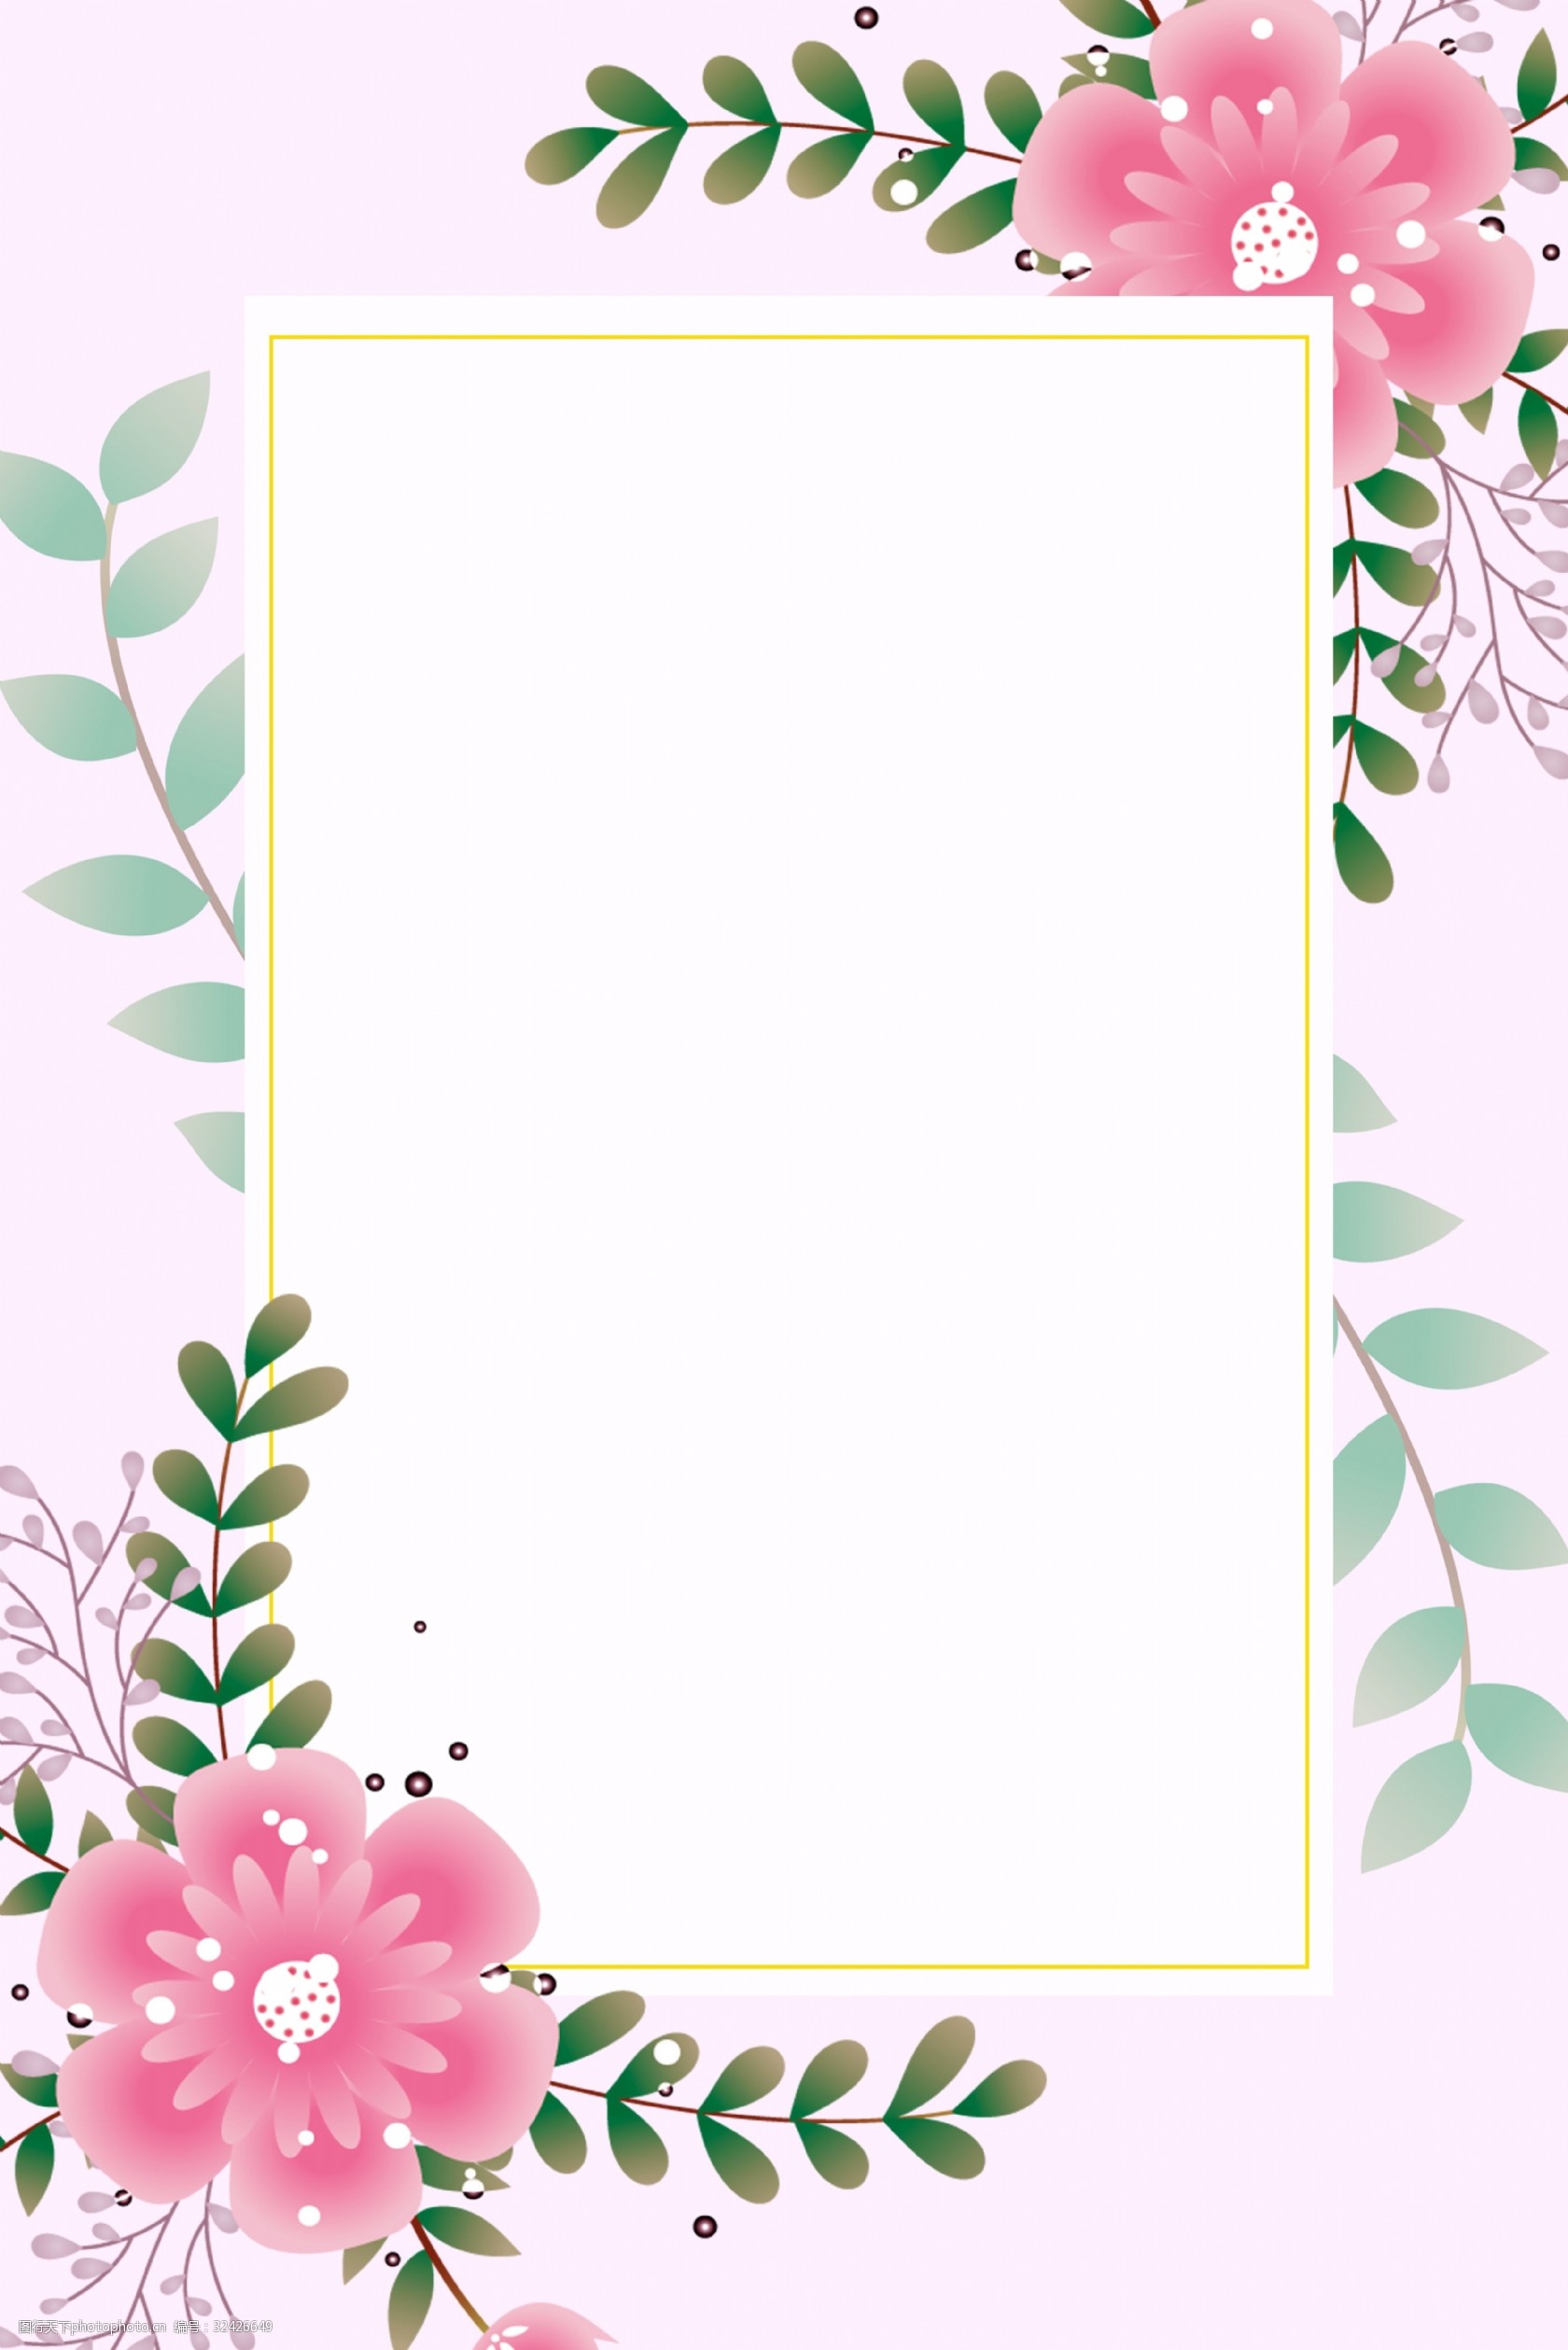 粉色 花朵 邀请函 婚礼邀请函 简约 清新 花朵边框 边框背景 幸福